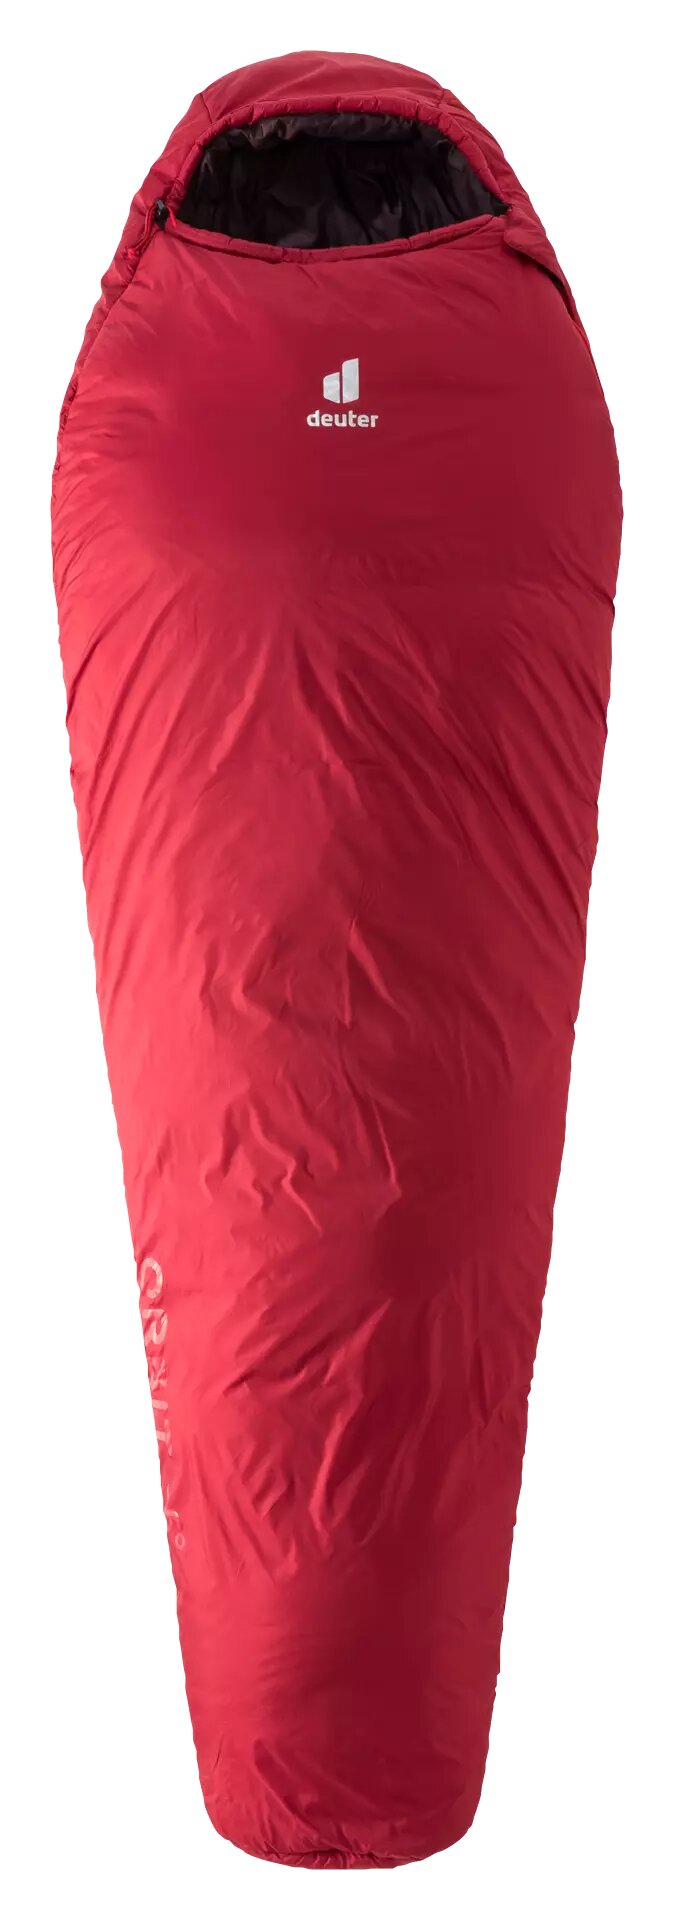 Спальный мешок Deuter Orbit -5 (3701621_5005 SL cranberry-aubergine 175 R)